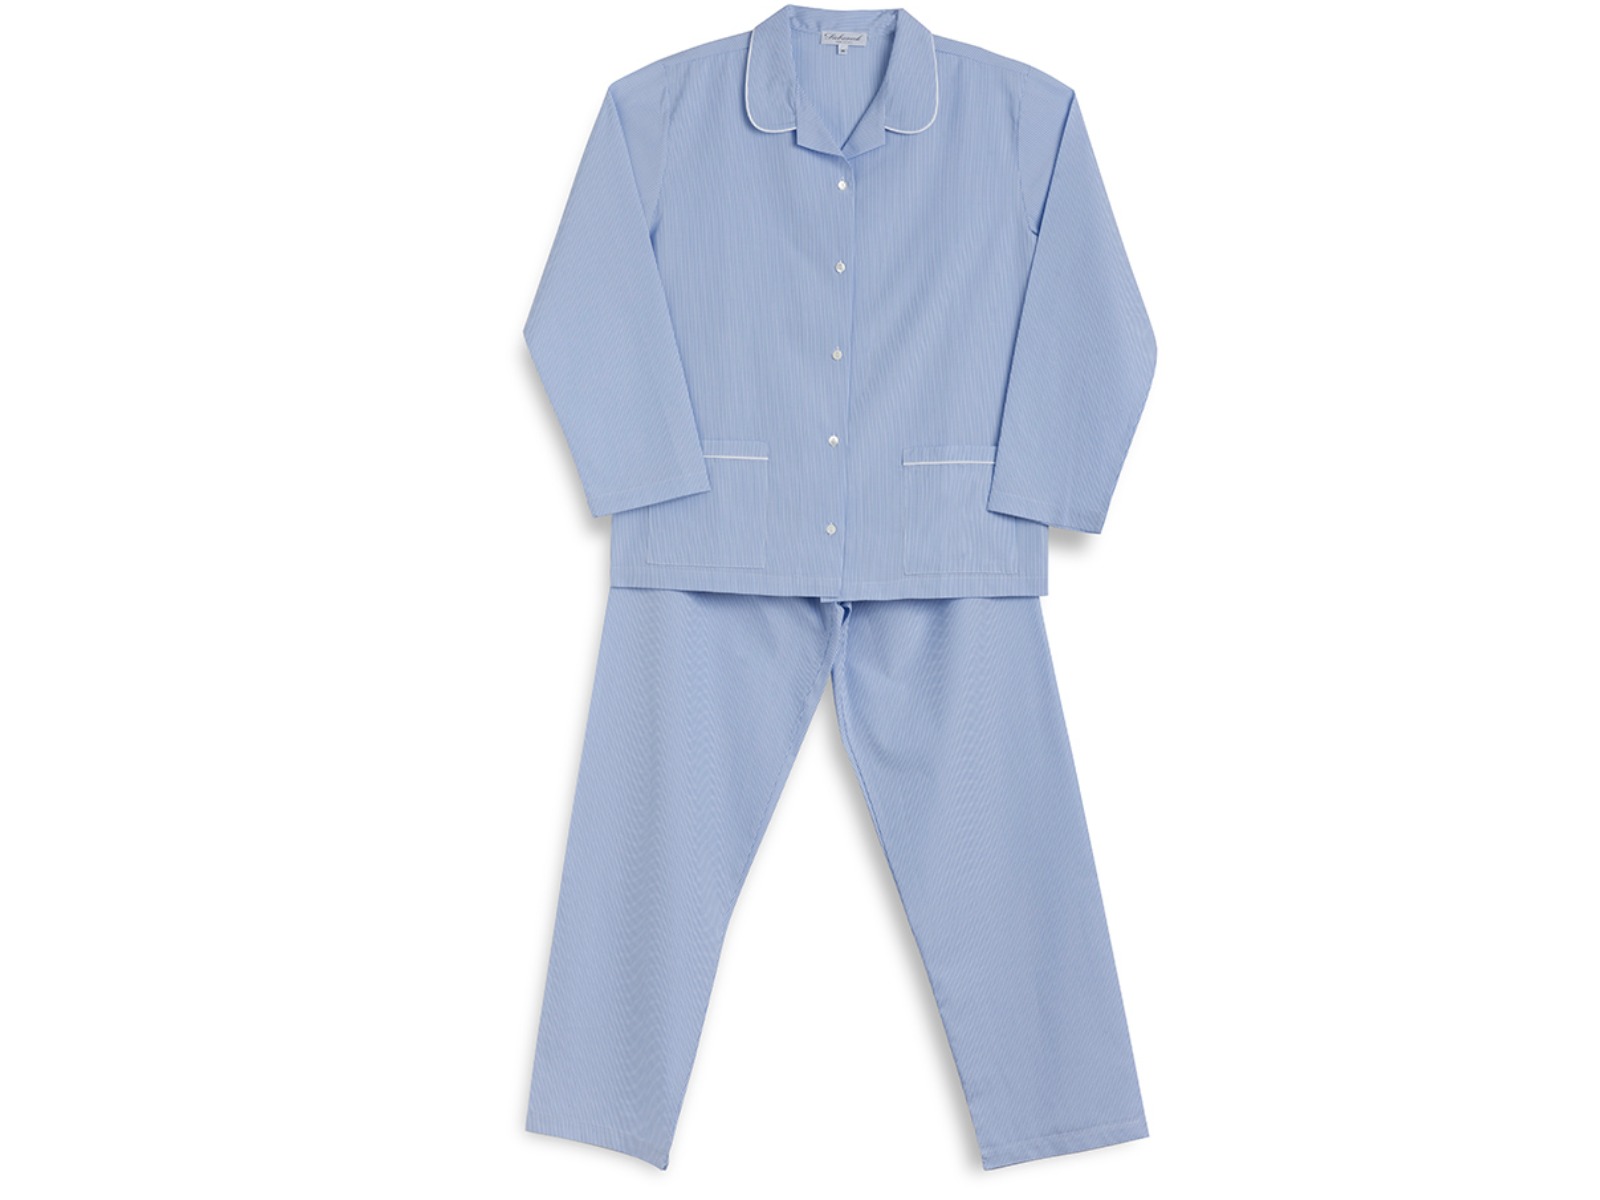 Siebaneck, i pigiami artigianali italiani: - Donna - mod. 1 bis Donna azzurro con righe bianche 